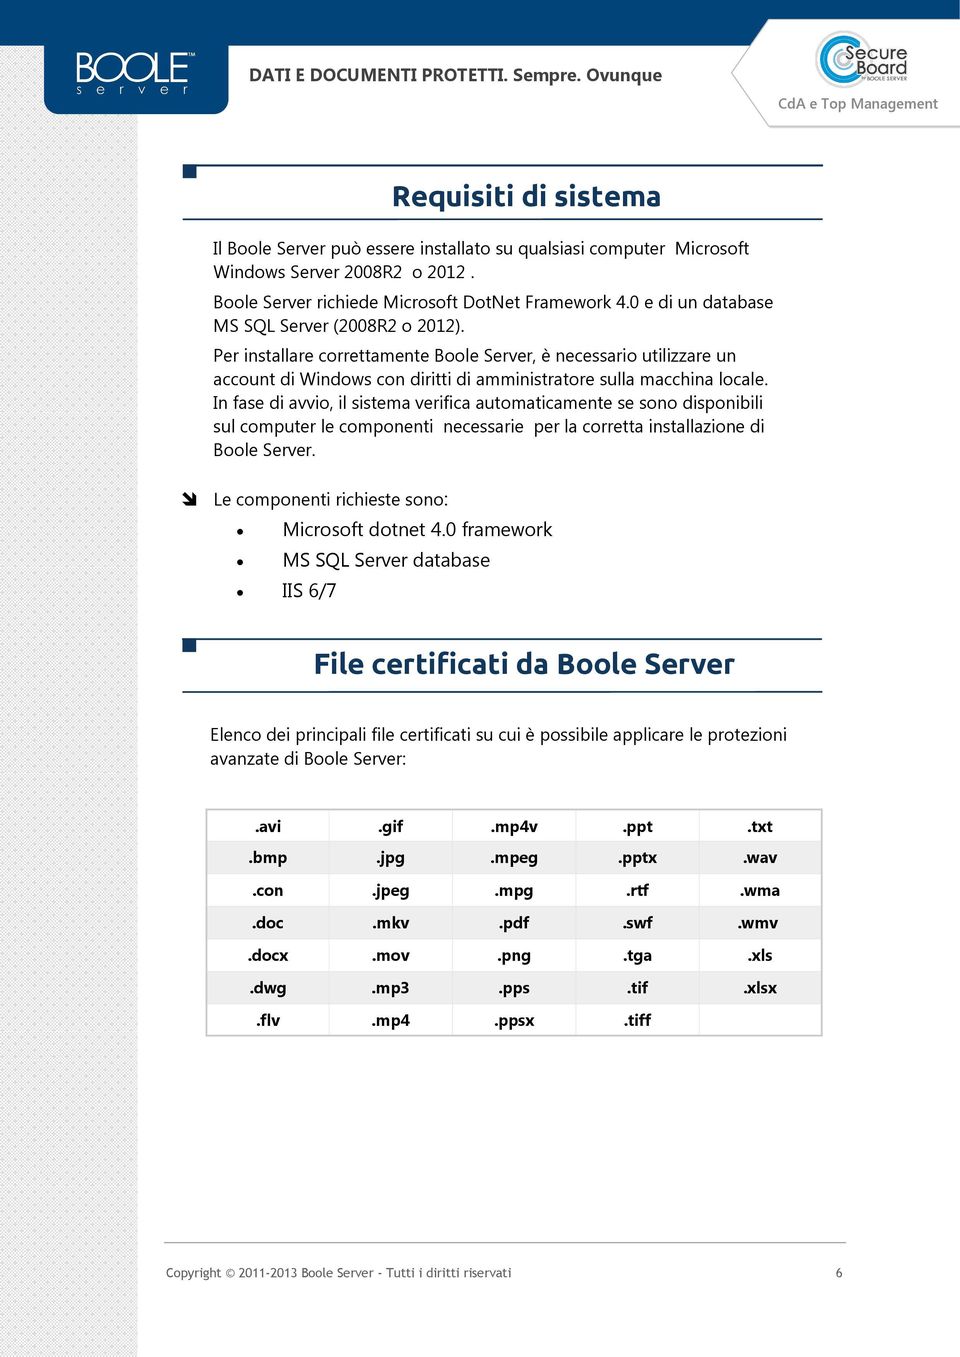 In fase di avvio, il sistema verifica automaticamente se sono disponibili sul computer le componenti necessarie per la corretta installazione di Boole Server.